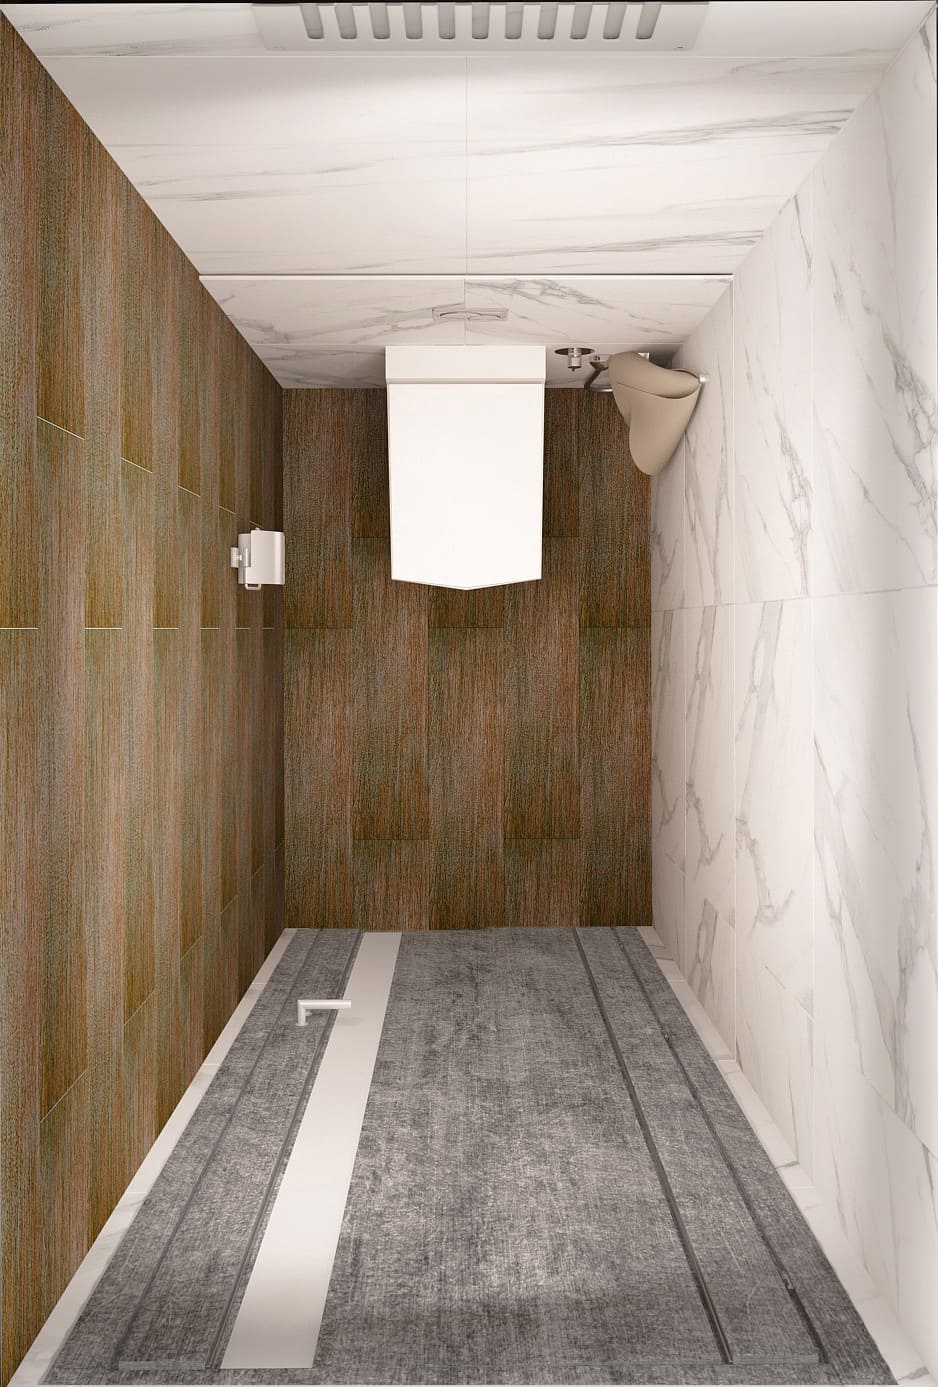 Дизайн-проект санузла в белых тонах 2 кв.м, плитка под мрамор, анитаз, потолочные светильники